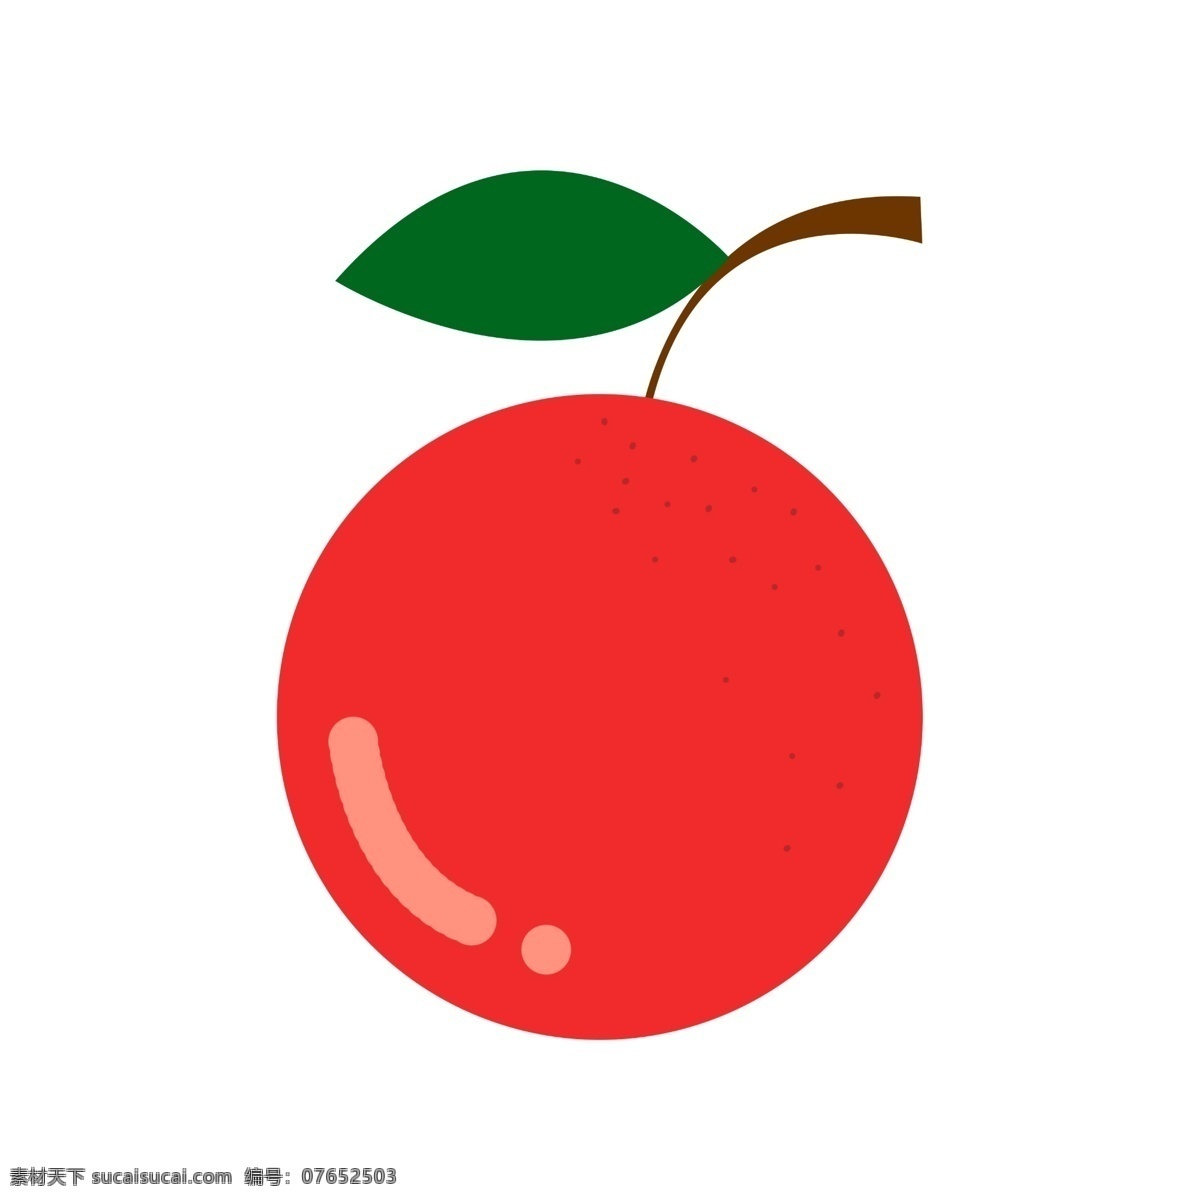 水果 图标 元素 橘子 ppt图标 简约风格 水果图标 海报图标 橘子水果 免 扣 图案